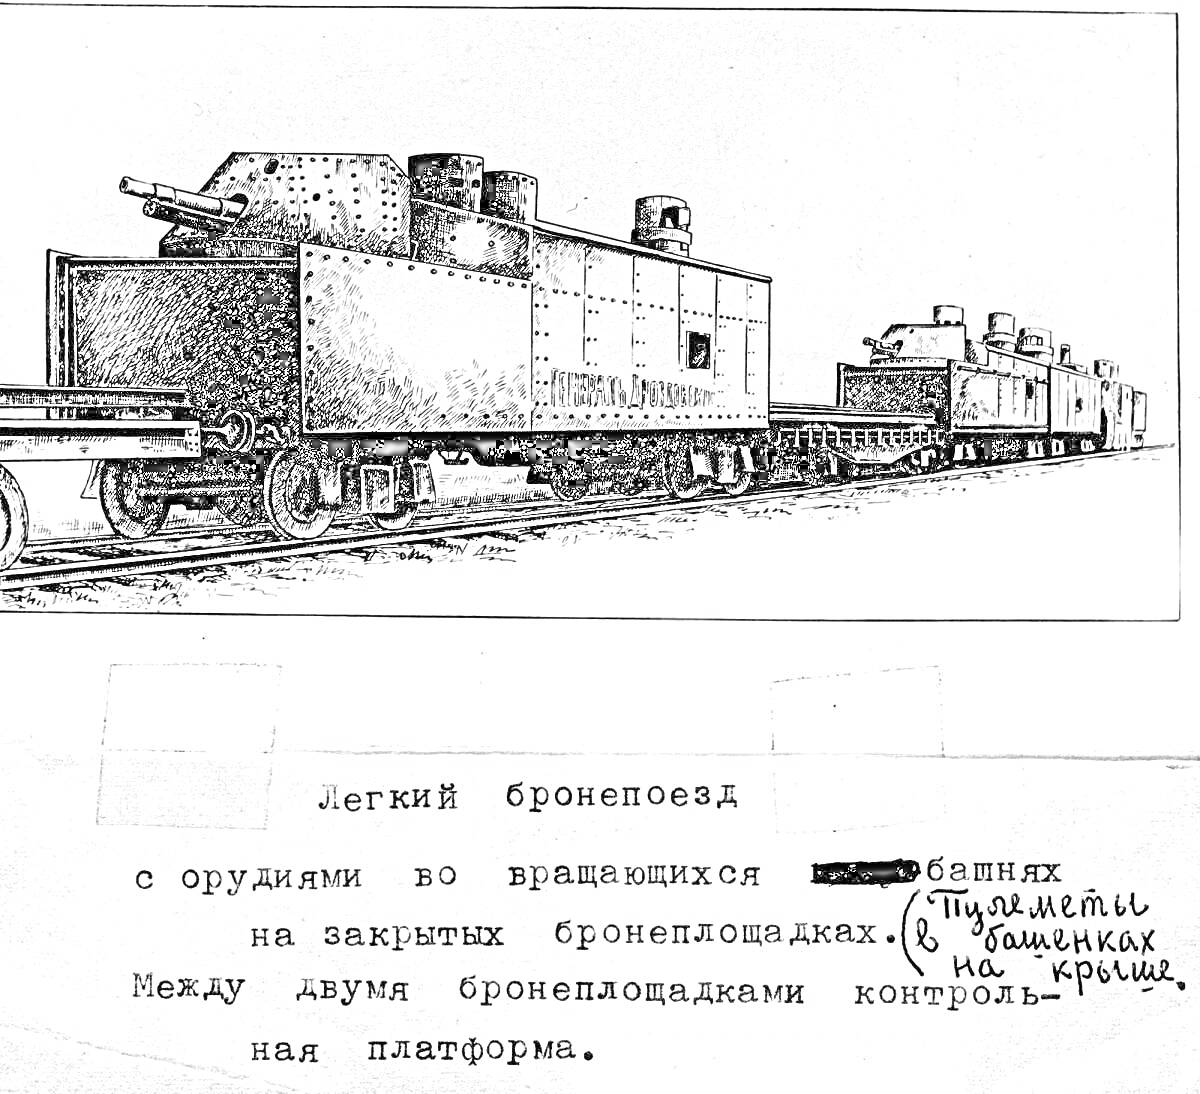  Легкий бронепоезд с орудиями во вращающихся башнях на закрытых бронеплощадках, пулеметы в башенках на крыше. Между двумя бронеплощадками контрольная платформа.